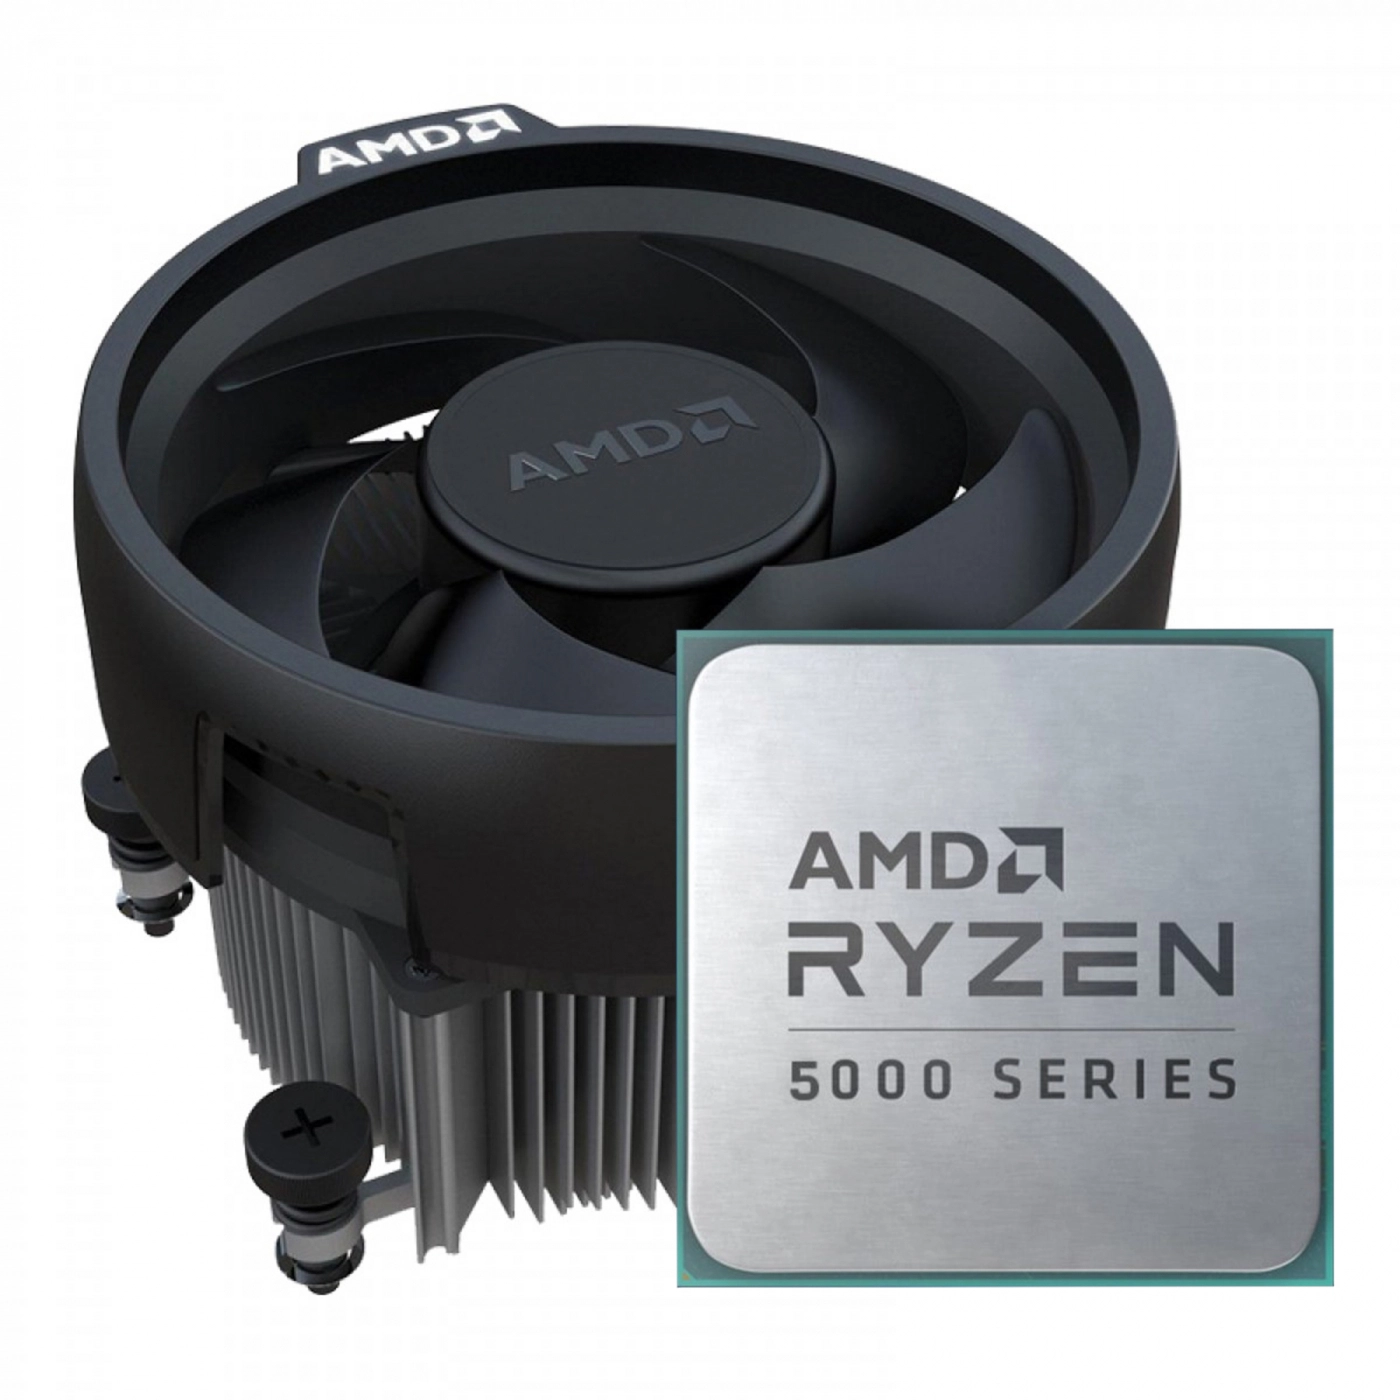 Купить Процесcор AMD Ryzen 5 5500 (6C/12T, 3.6-4.2GHz,16MB,65W,AM4, Wraith Stealth) MPK - фото 1